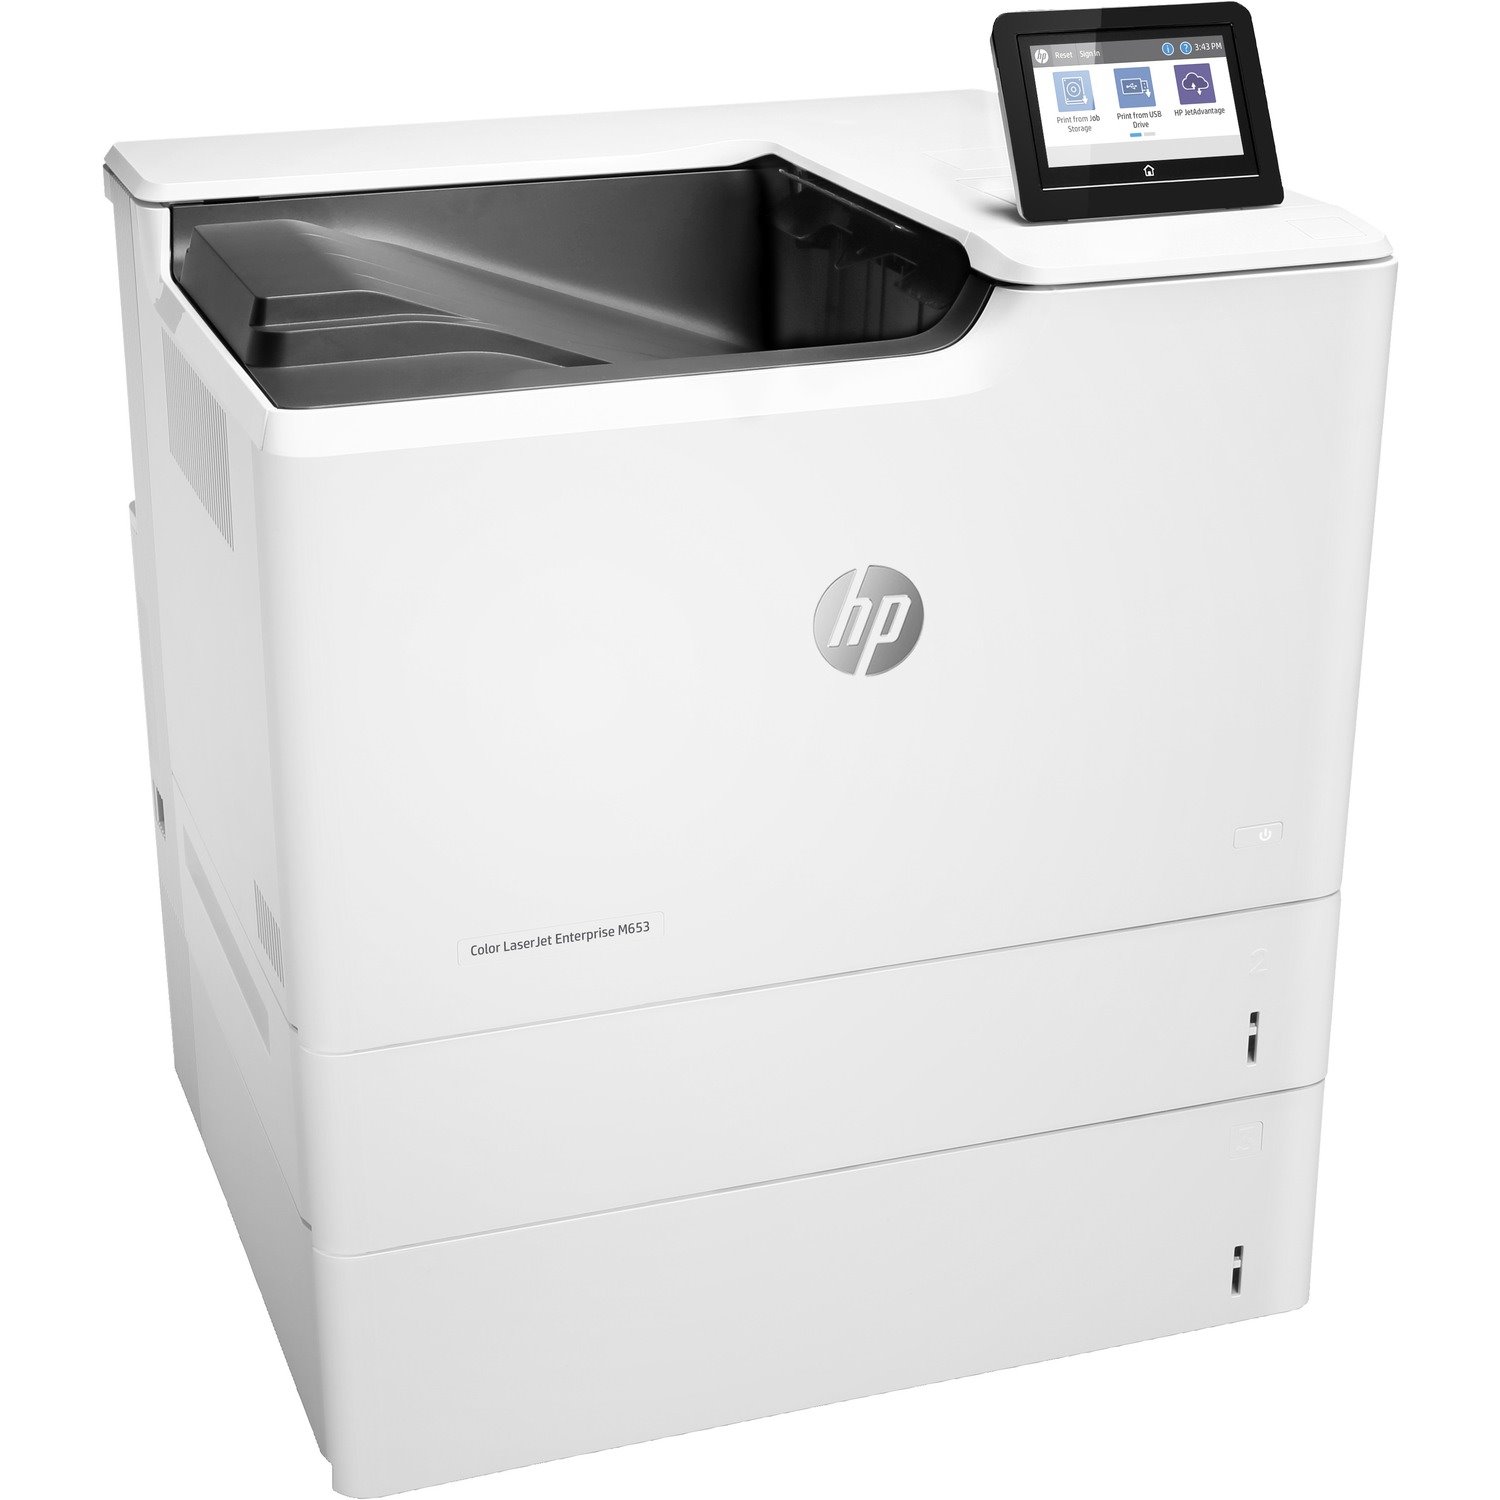 HP LaserJet M653x Desktop Laser Printer - Refurbished - Color